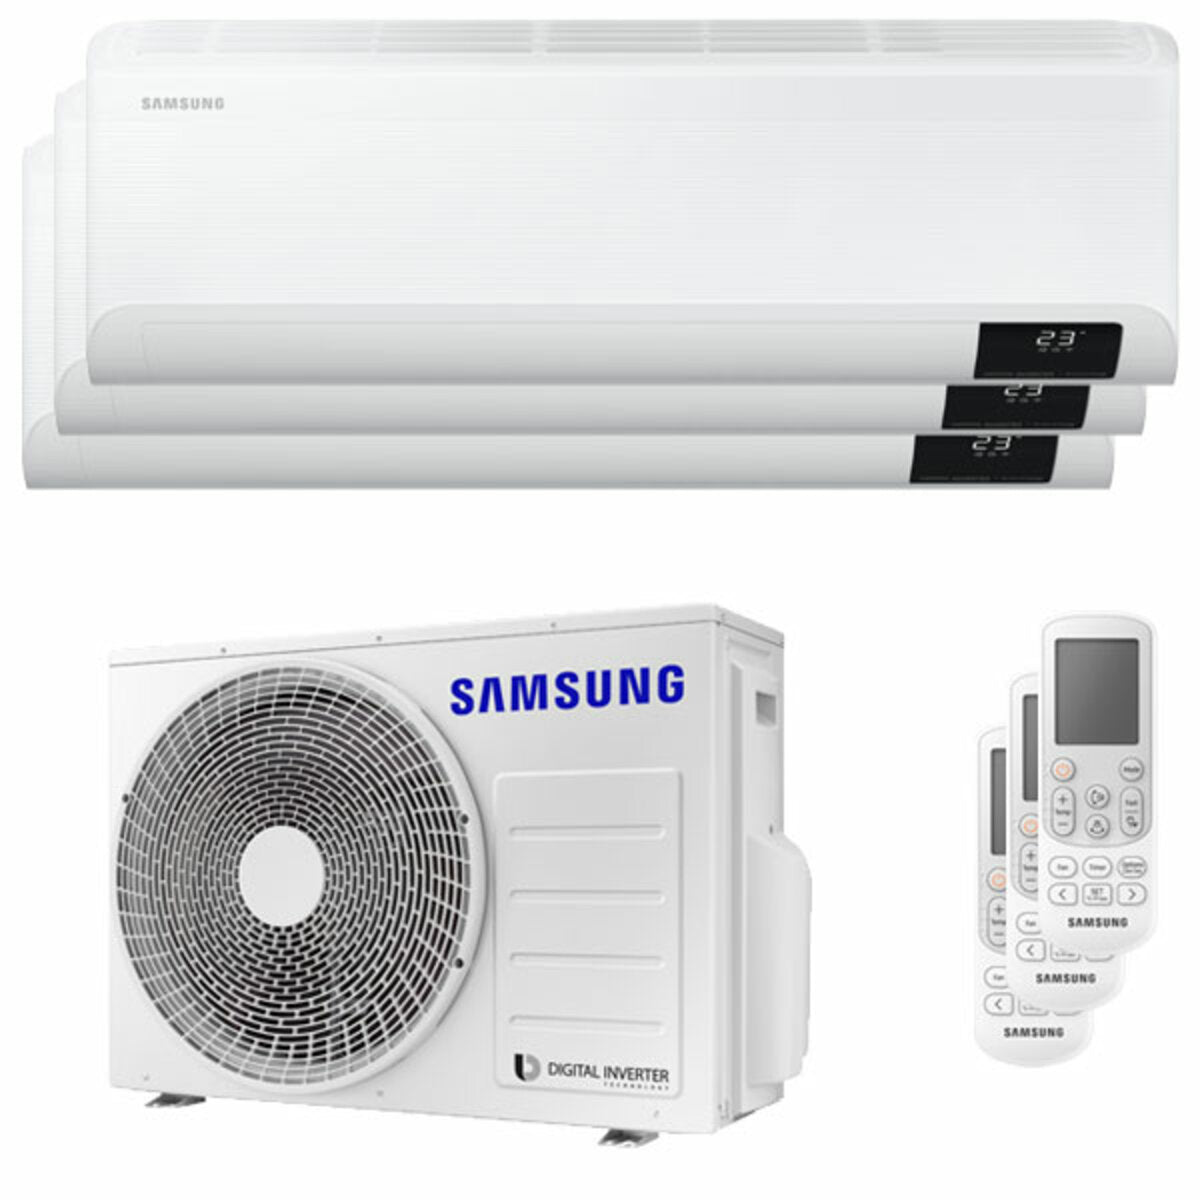 Samsung Cebu Wi-Fi Trial Split Klimaanlage 7000 + 9000 + 9000 BTU Wechselrichter A++ WLAN Außengerät 5,2 kW